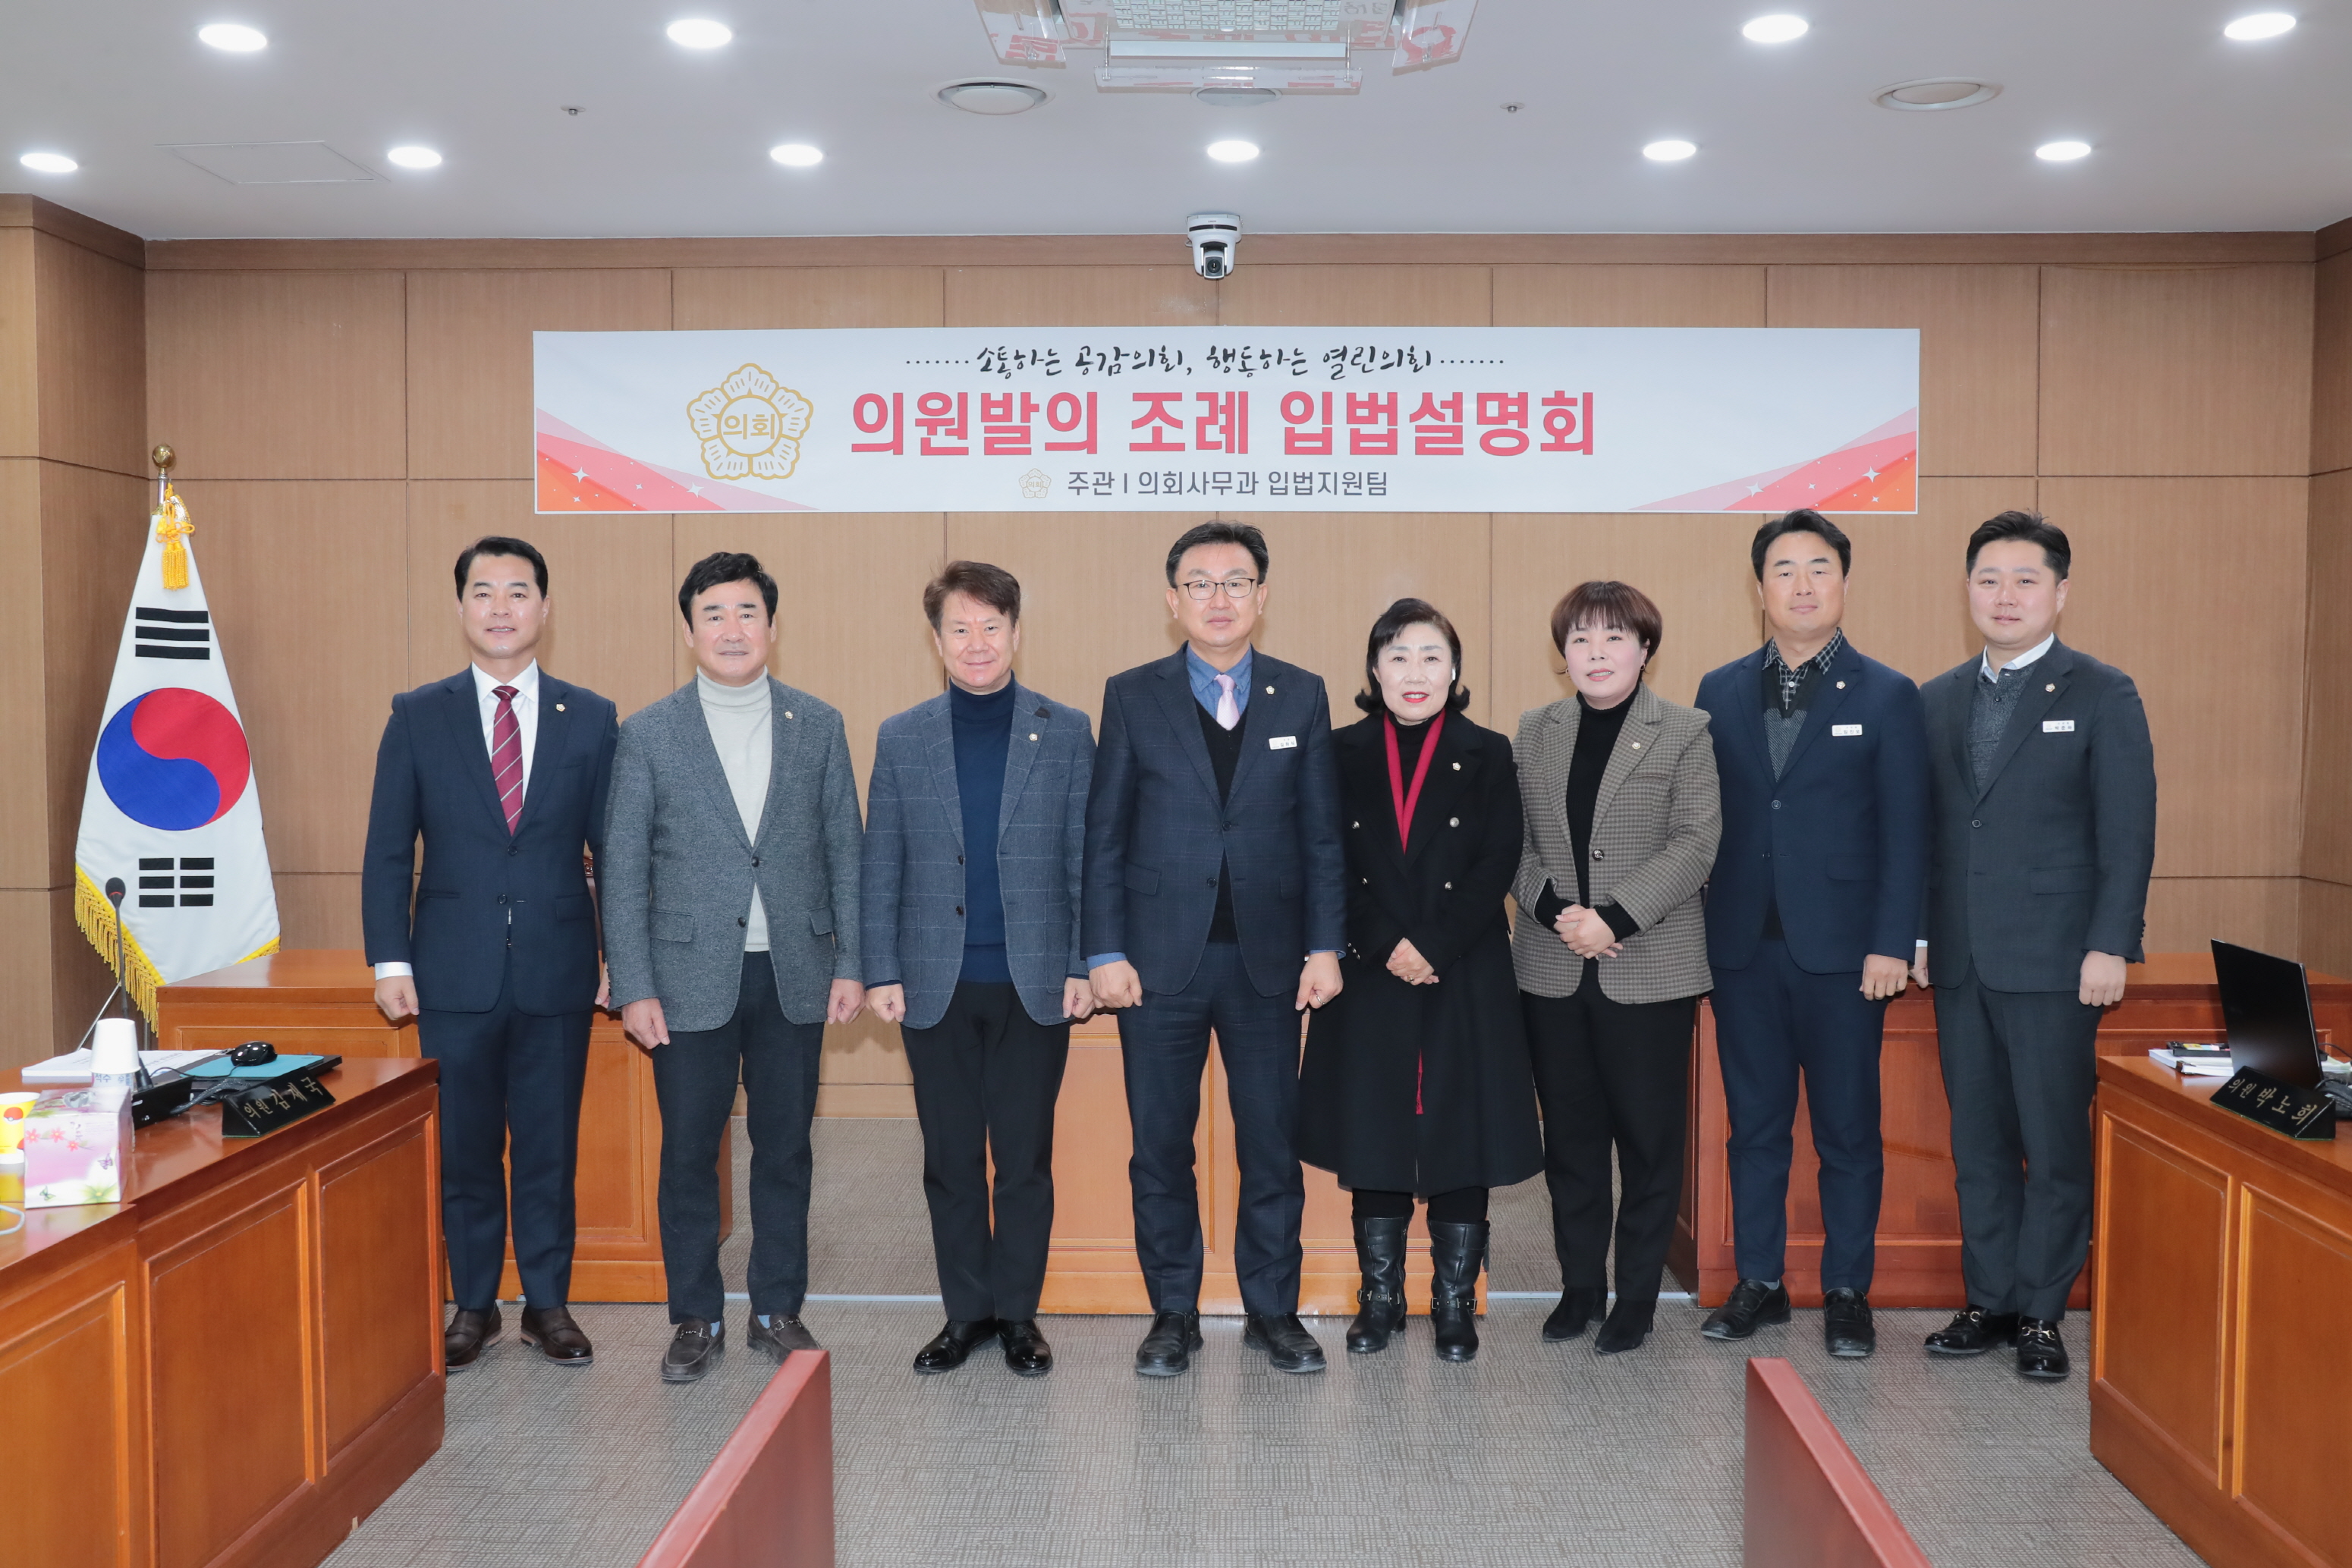 제8대 이천시의회 자체 입법설명회 및 직원별 업무보고 개최